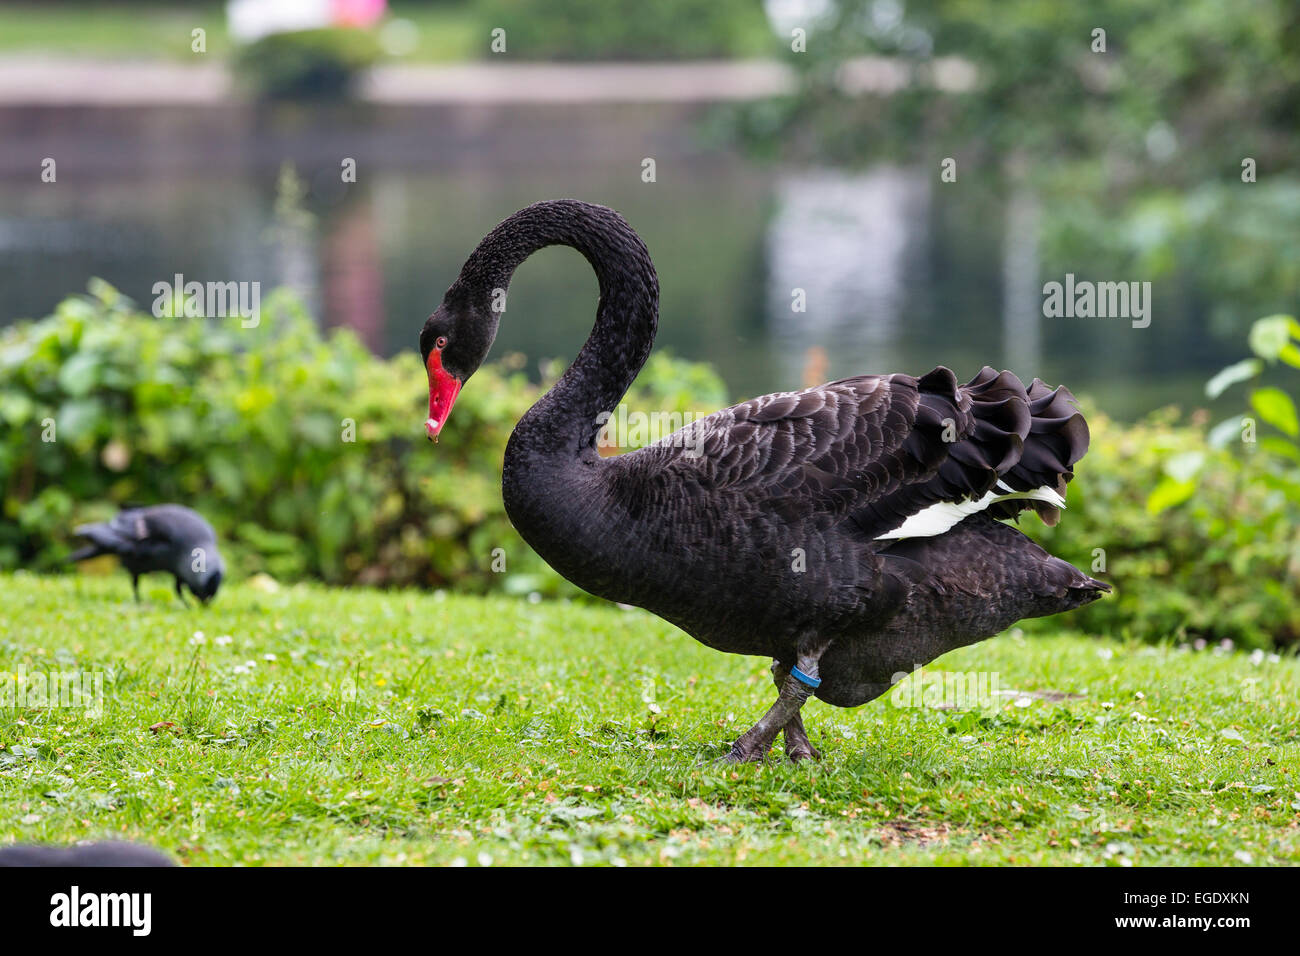 Black Swan dans les jardins du spa, Cygnus atratus, l'île de Norderney, Nationalpark, Mer du Nord, îles de la Frise orientale, Frise orientale, Basse-Saxe, Allemagne, Europe Banque D'Images